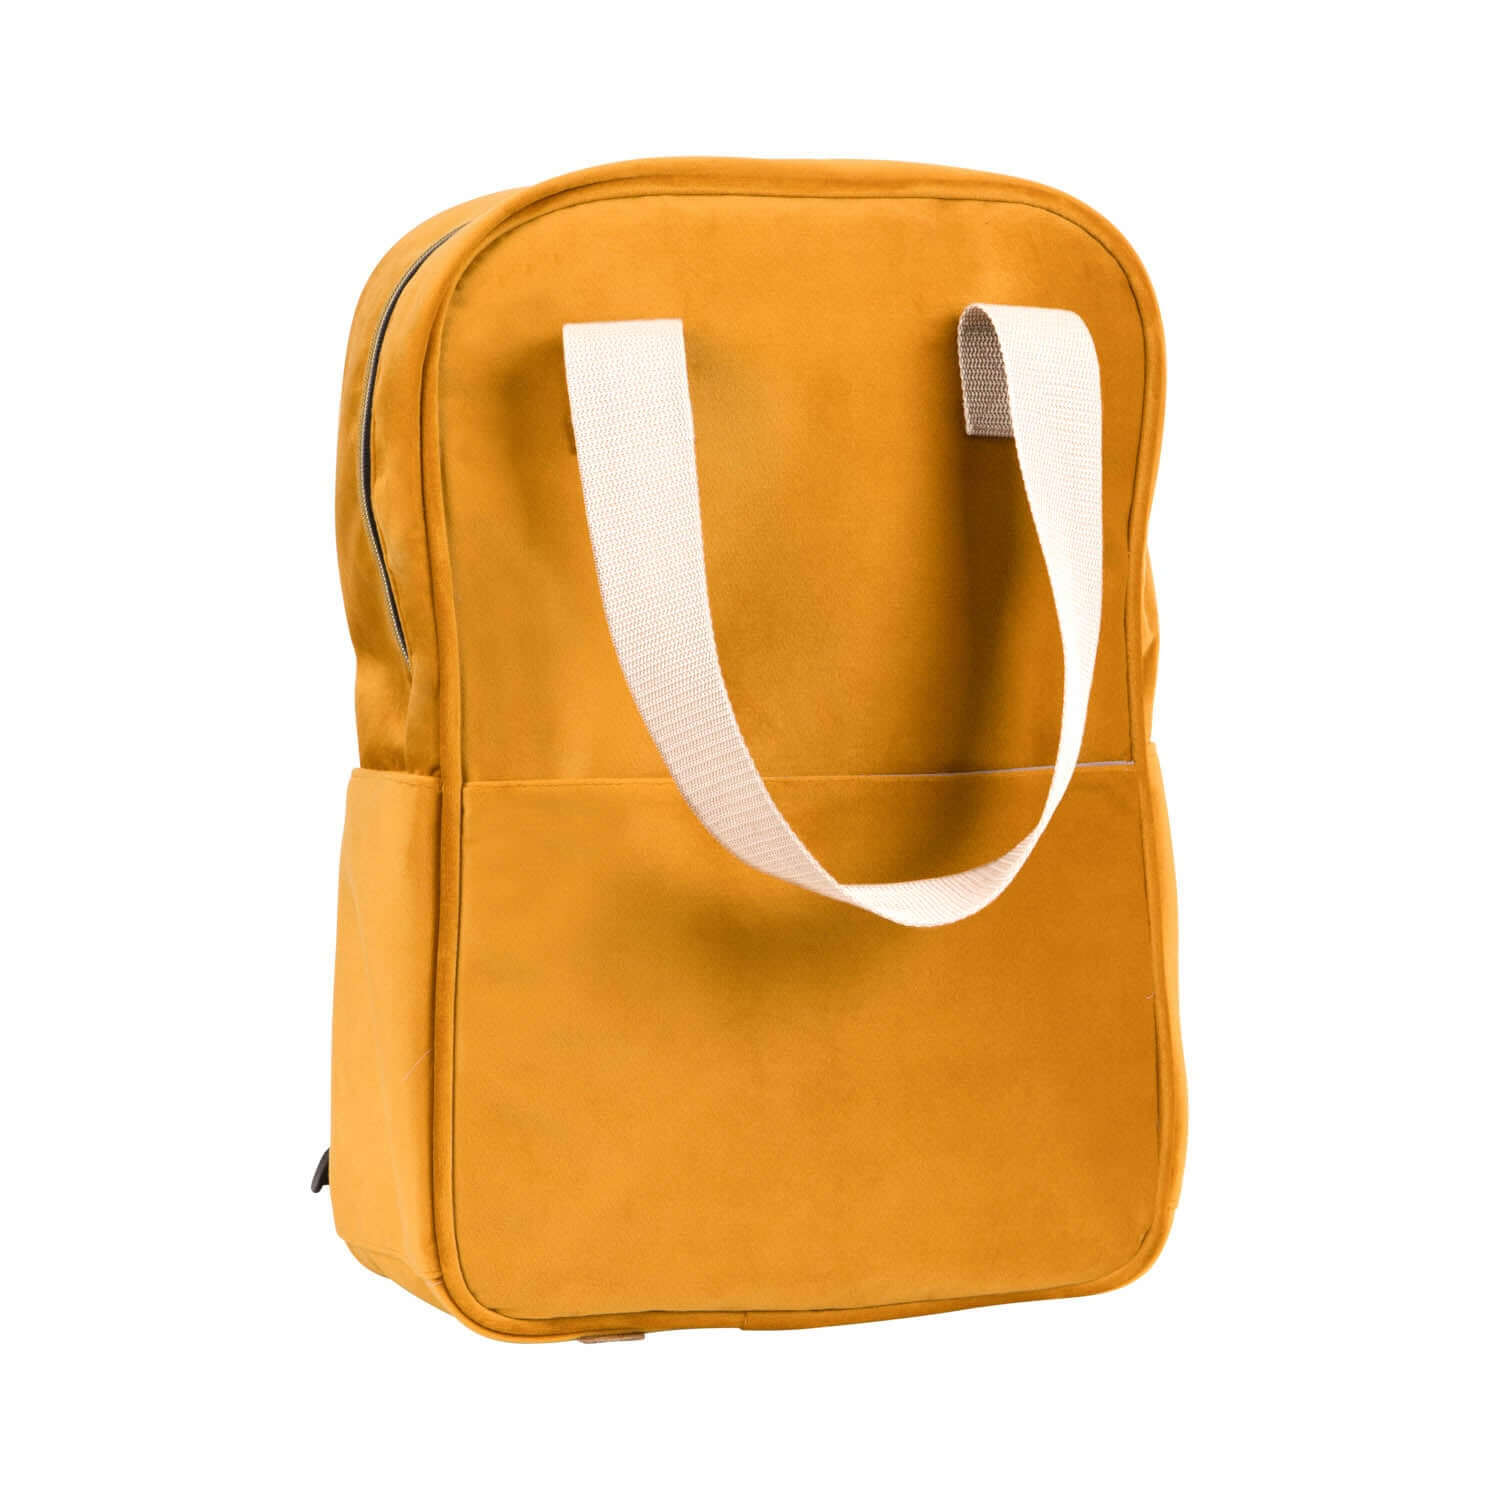 velvet yellow backpack by bettys home. backpack for laptop women’s 